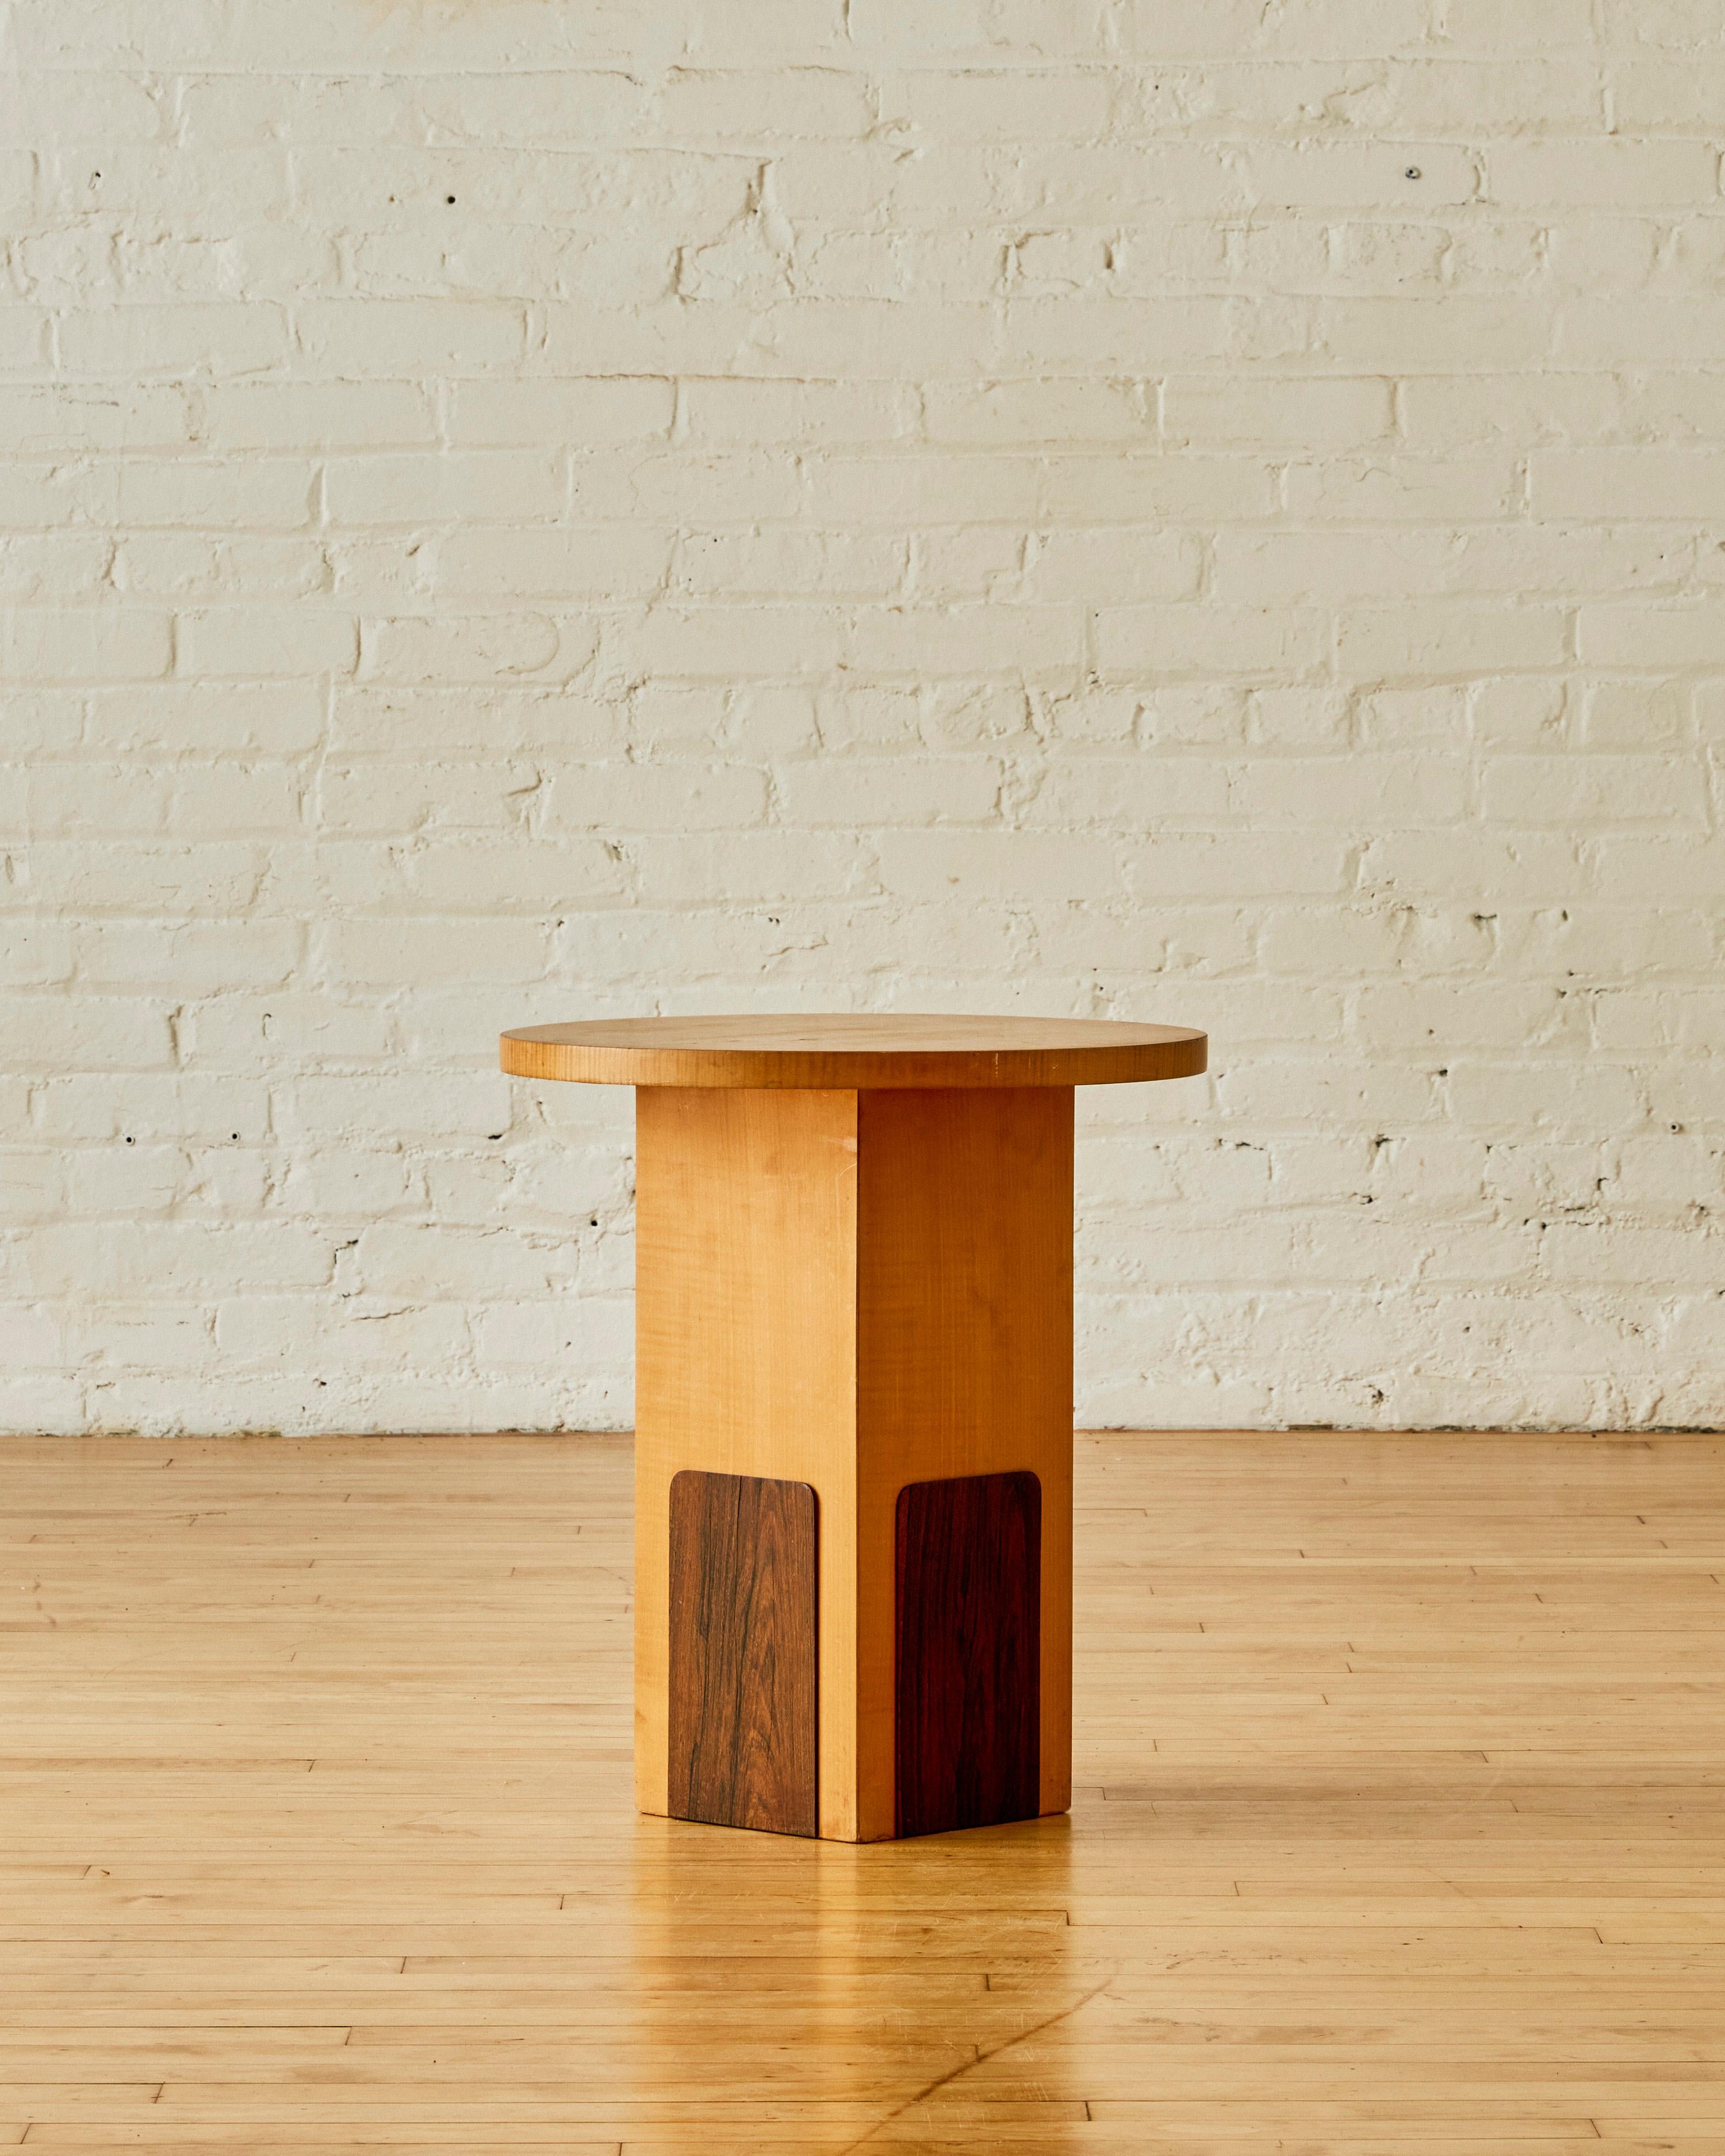 Table d'appoint française de Michel Duffet présentant un plateau rond et une base rectangulaire en bois de sycomore avec des détails en bois de rose.

Michel Dufet (1888-1985) est un créateur de meubles français actif au début du XXe siècle. Il